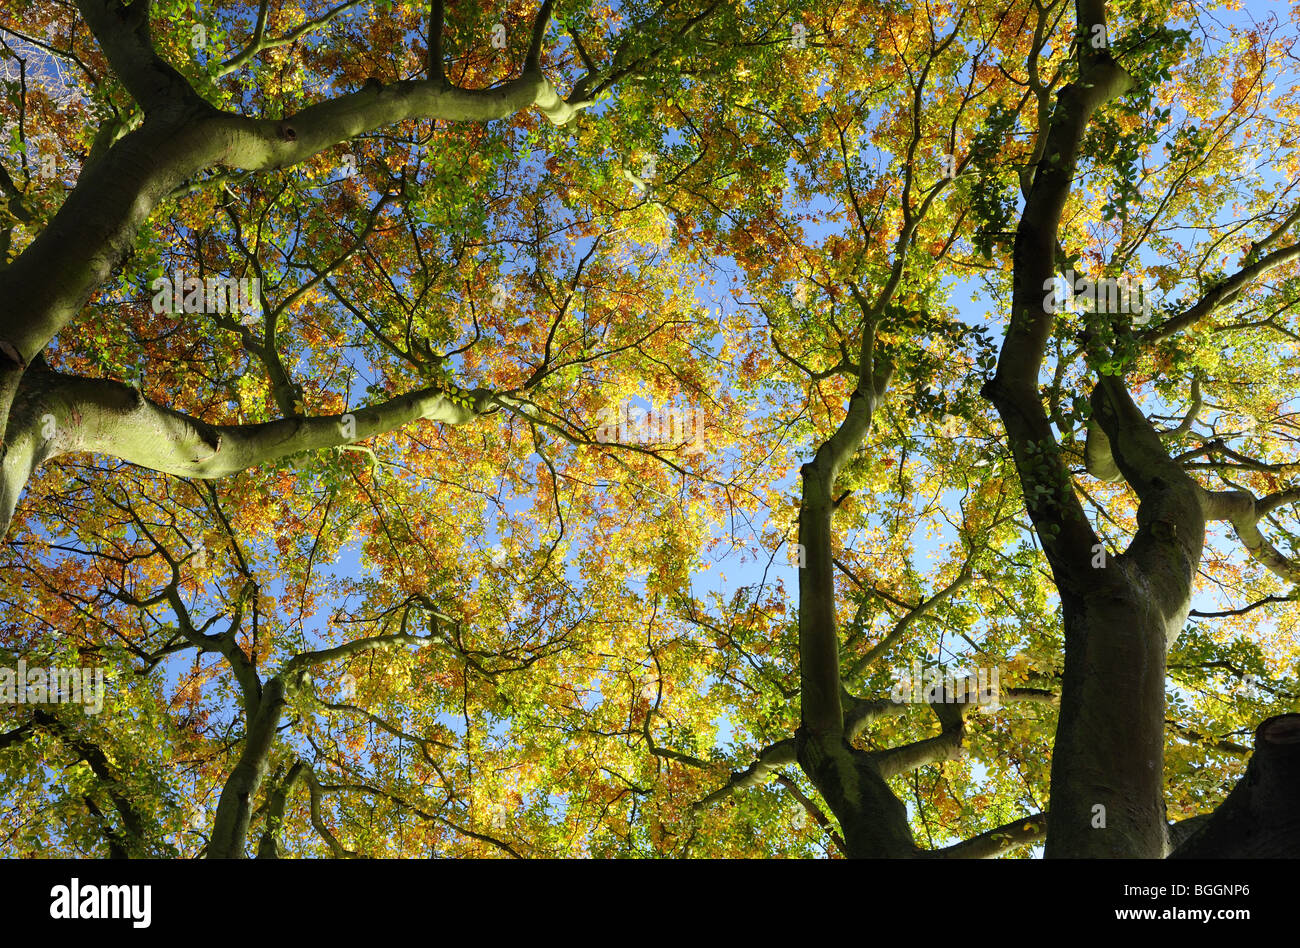 Vibrant Autumn tress - Bottom to top view Stock Photo